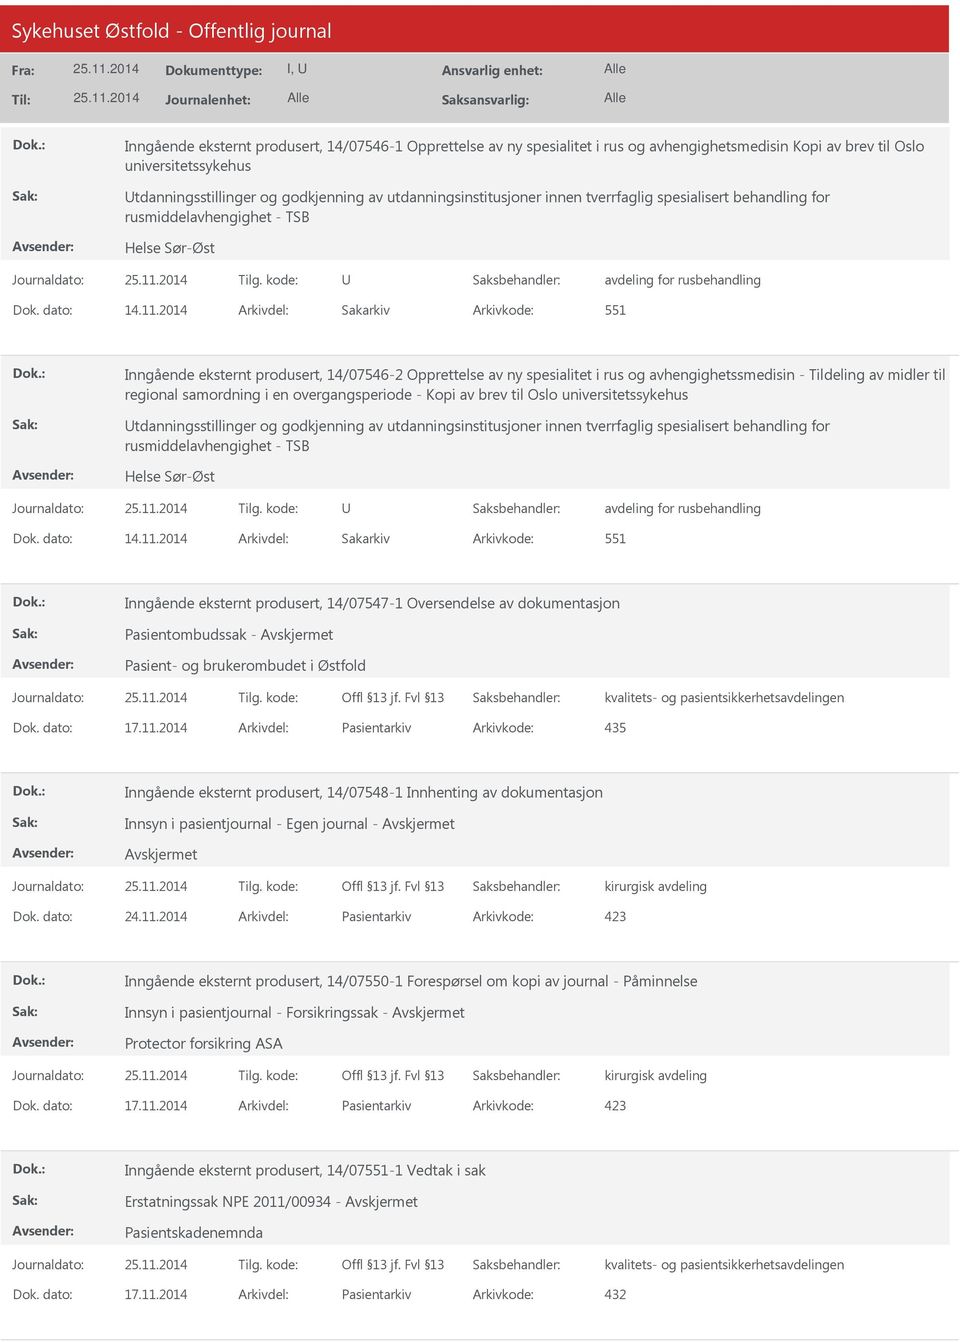 2014 Arkivdel: Sakarkiv Arkivkode: 551 Inngående eksternt produsert, 14/07546-2 Opprettelse av ny spesialitet i rus og avhengighetssmedisin - Tildeling av midler til regional samordning i en